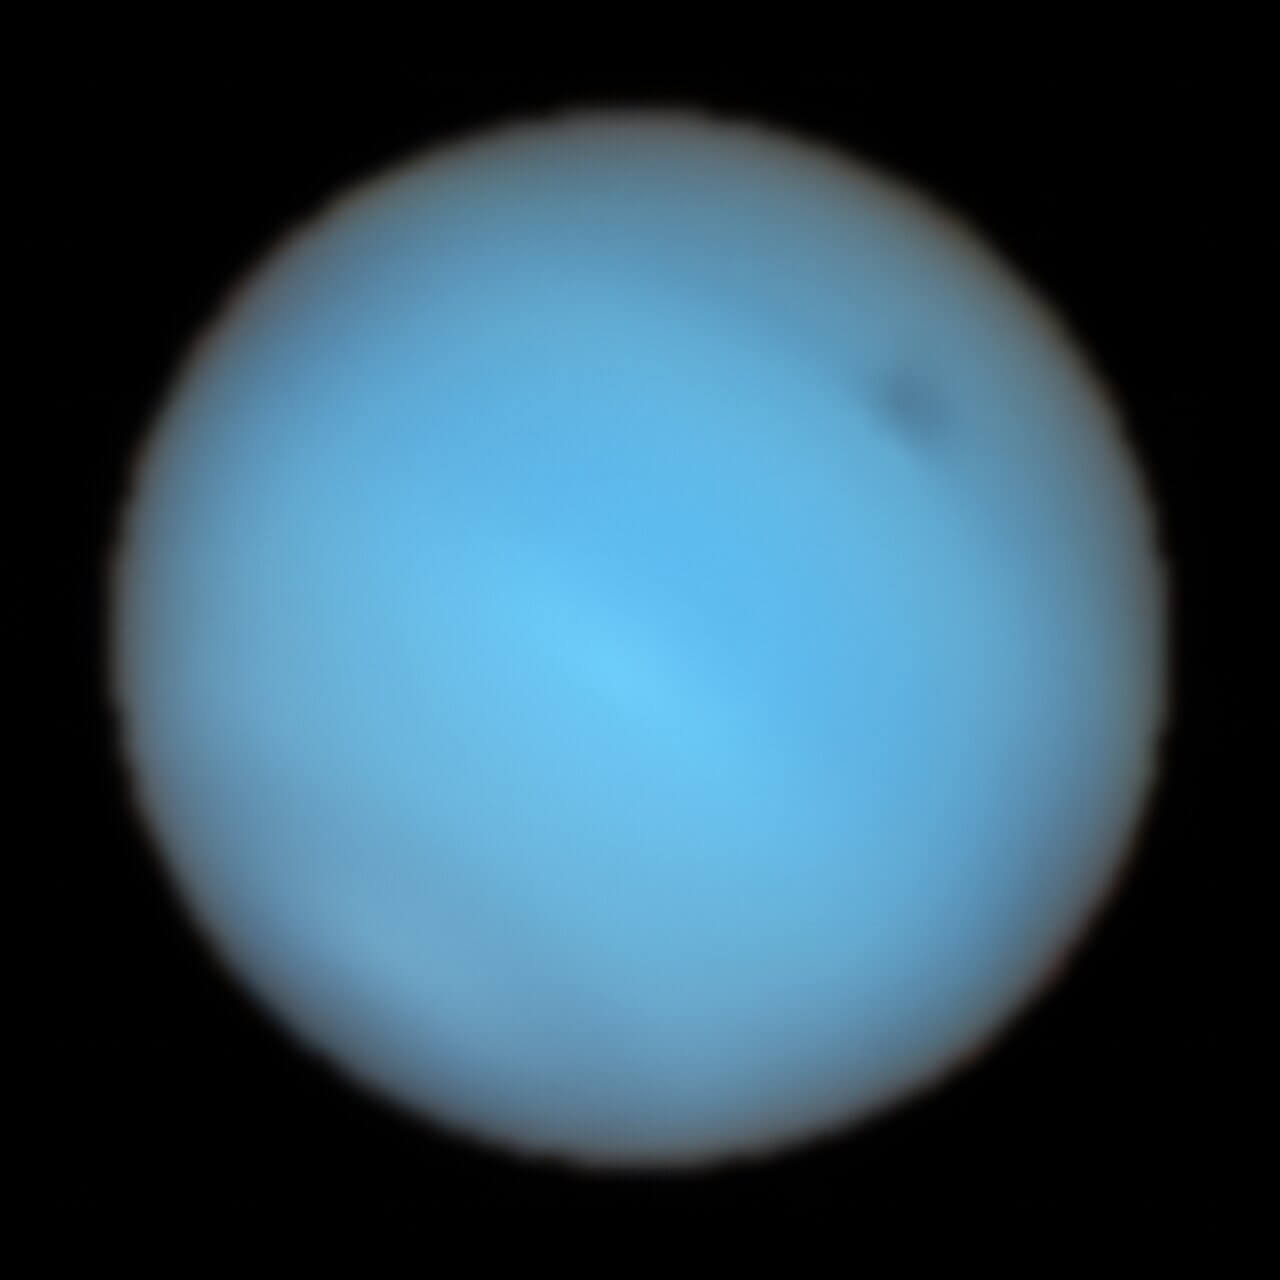 【▲ 図3: VLTのMUSEで2019年に撮影された海王星の画像。右上にある薄暗い反転が暗斑のNDS-2018である。今回の観測で、地上の望遠鏡で初めて撮影された暗斑となった。 (Image Credit: ESO, P. Irwin et al.) 】